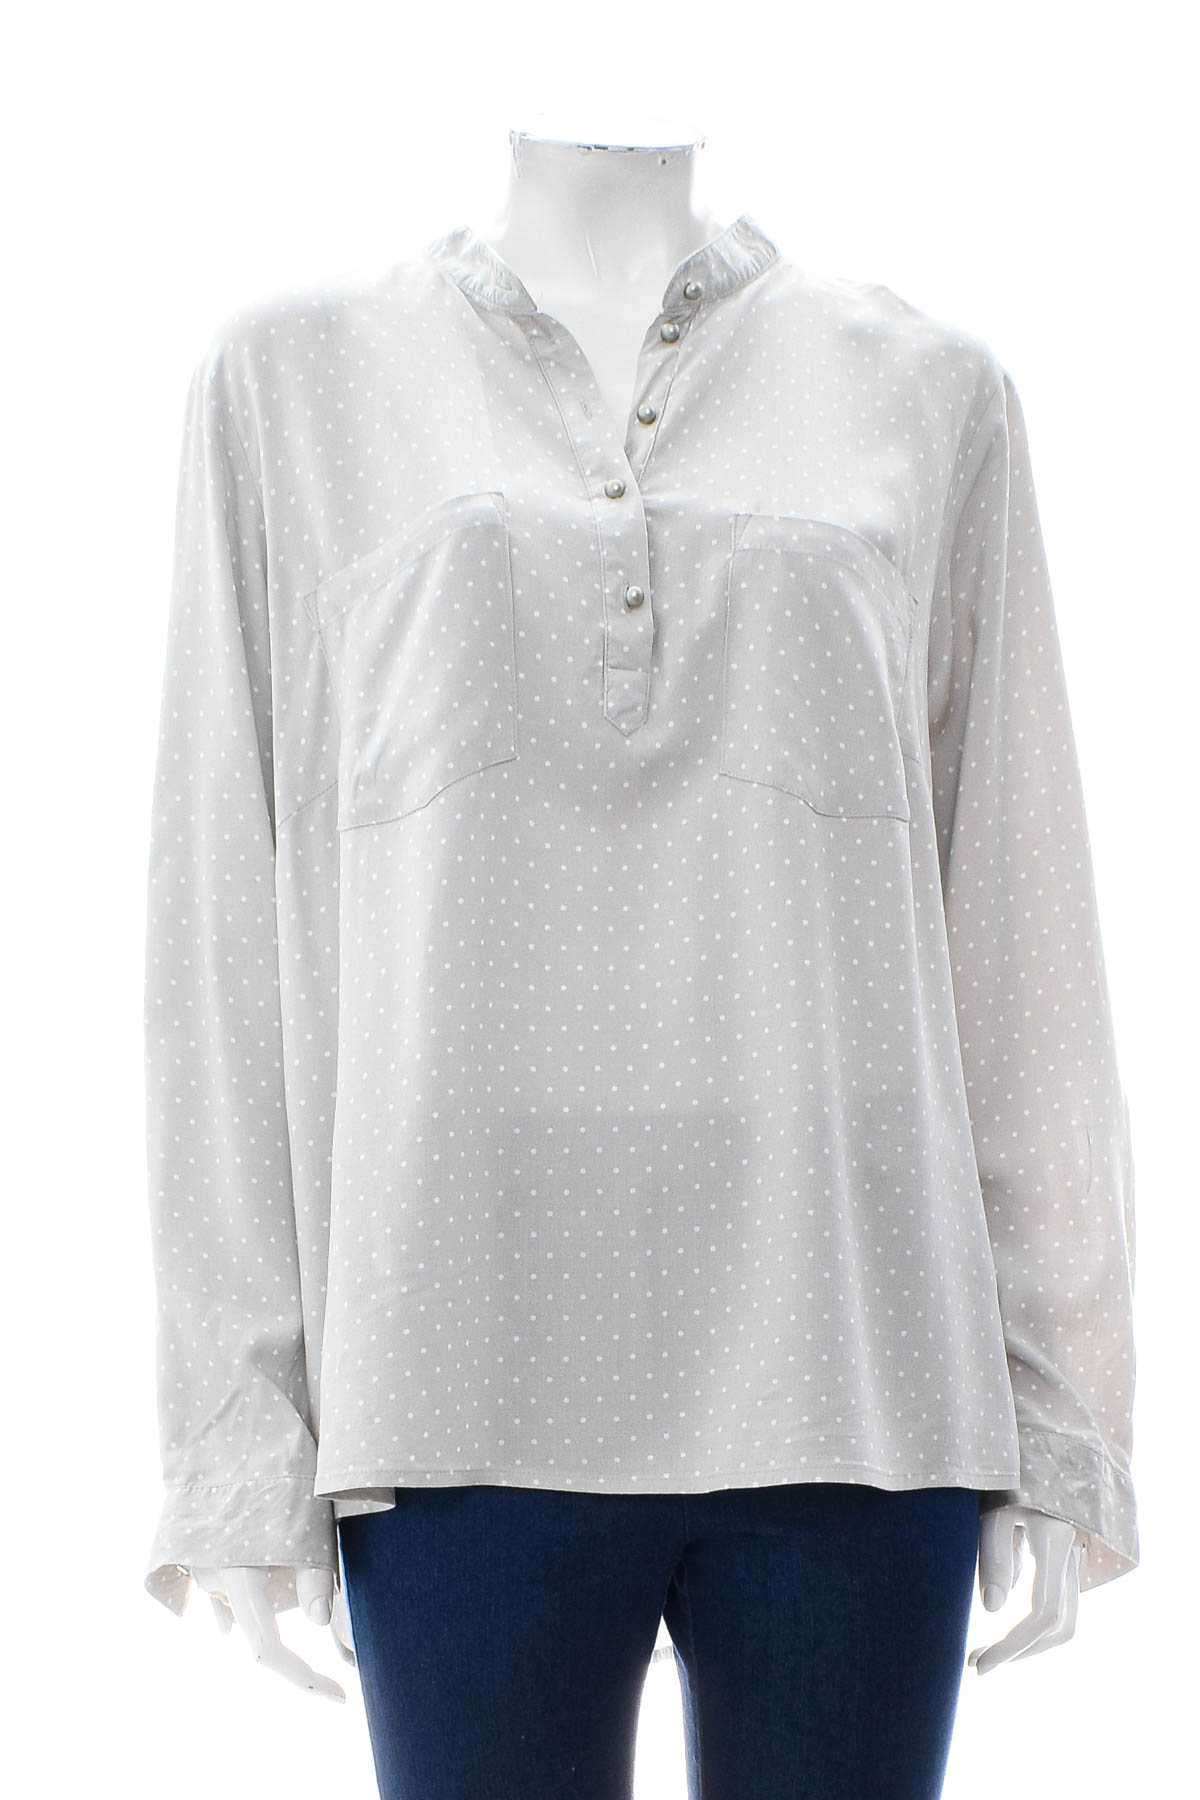 Γυναικείо πουκάμισο - Bpc selection bonprix collection - 0